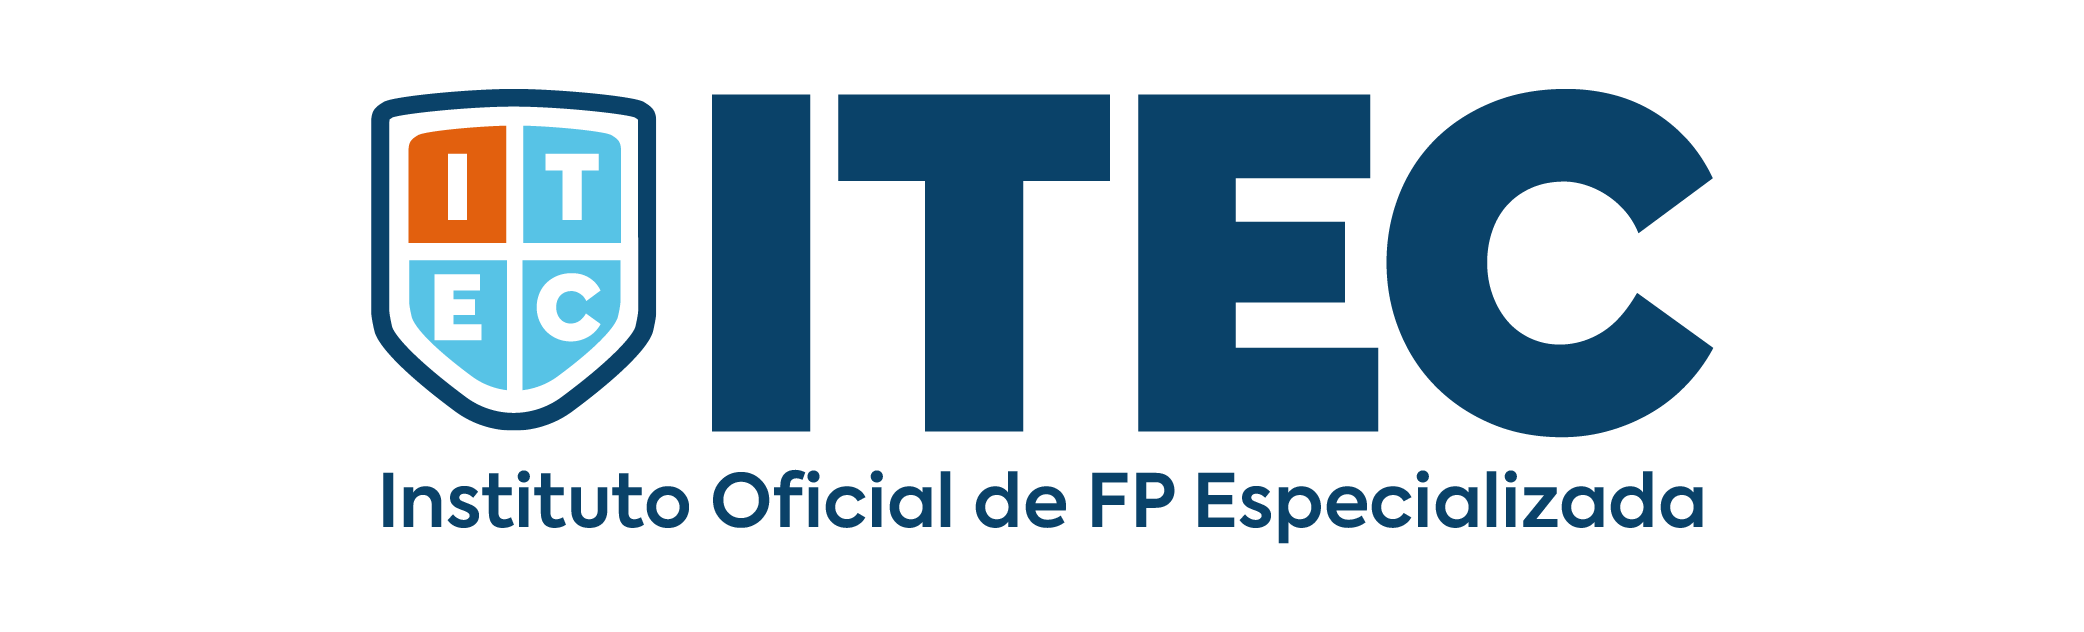 ITEC (INSTITUTO DE EDUCACIÓN TECNOLÓGICA)